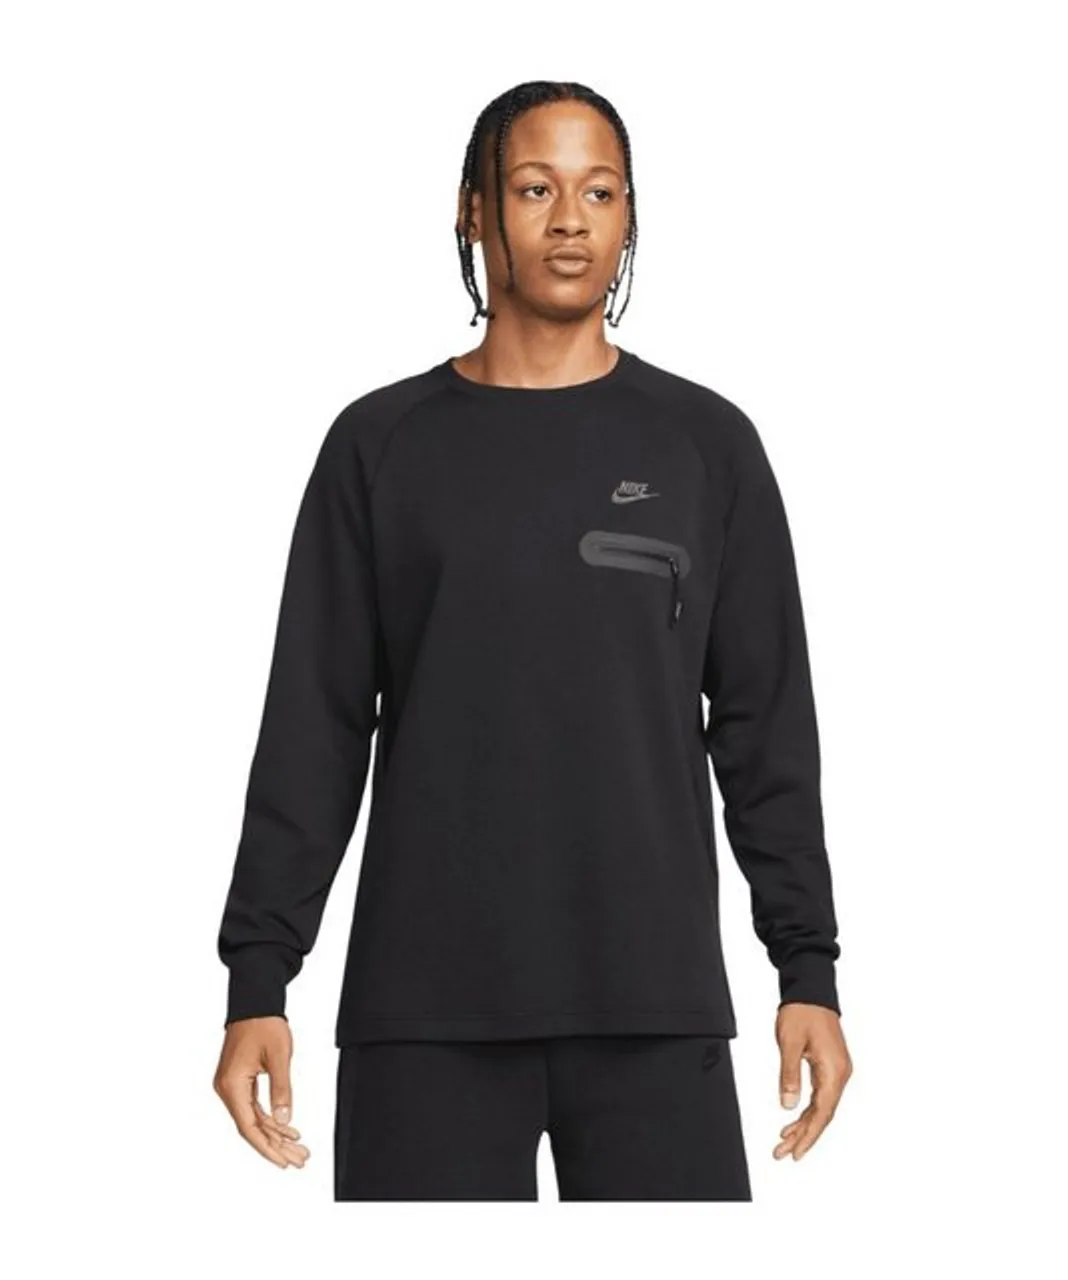 Nike Sportswear Sweatshirt Tech Fleece Sweatshirt